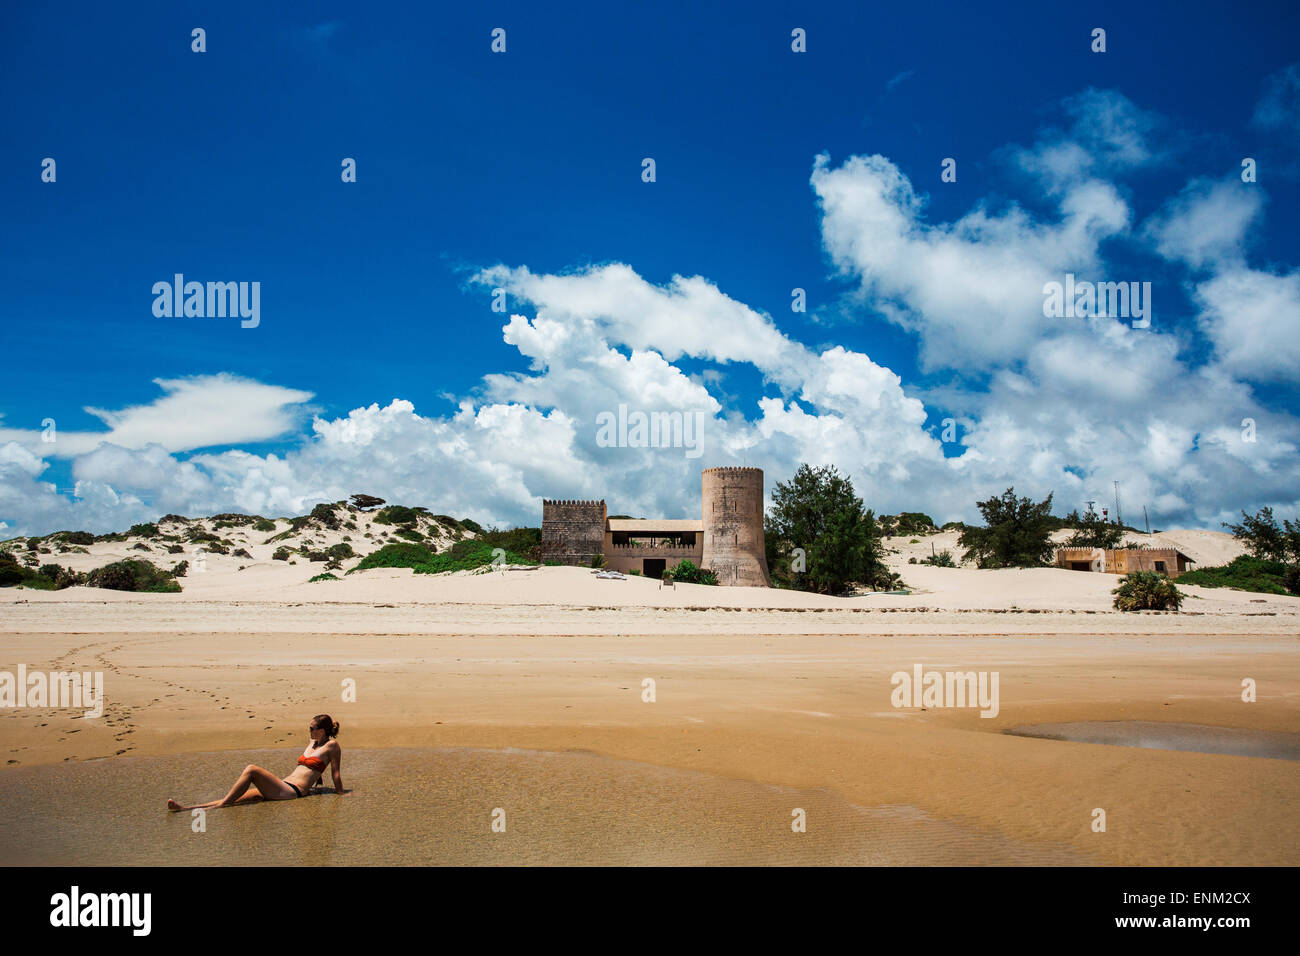 Océan Indien, Lamu, Kenya, Afrique. Une jeune femme en bikini se trouve en eau peu profonde sur une plage avec un vieux bâtiment de style château à distance. Banque D'Images